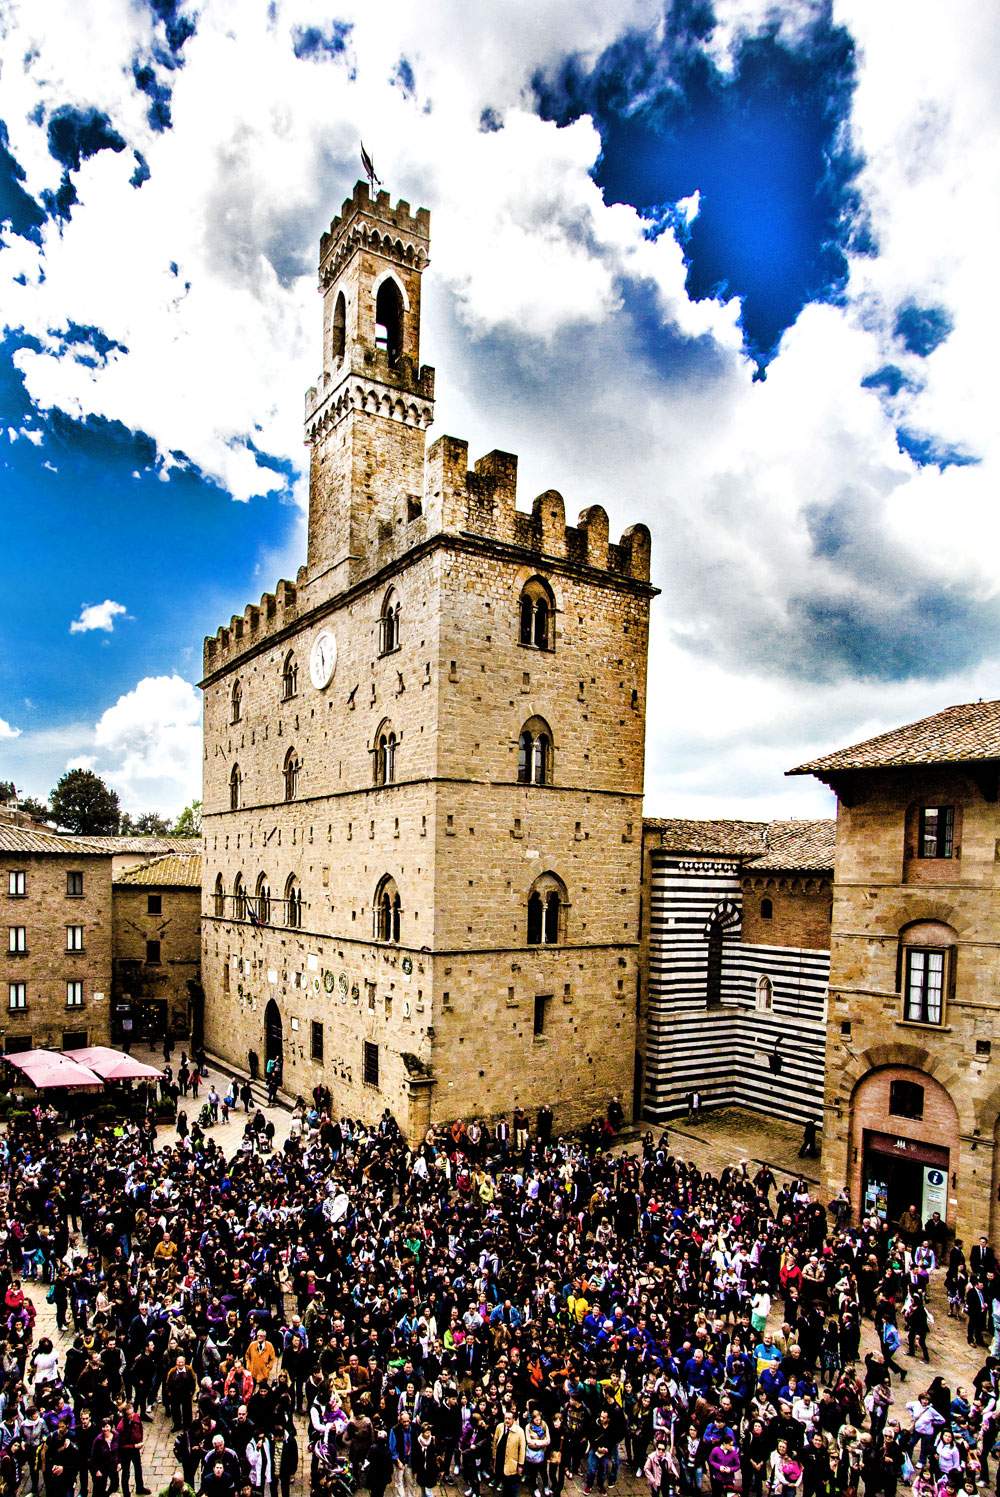 Volterra, candidate au titre de capitale italienne de la culture 2021, met l'accent sur la régénération humaine